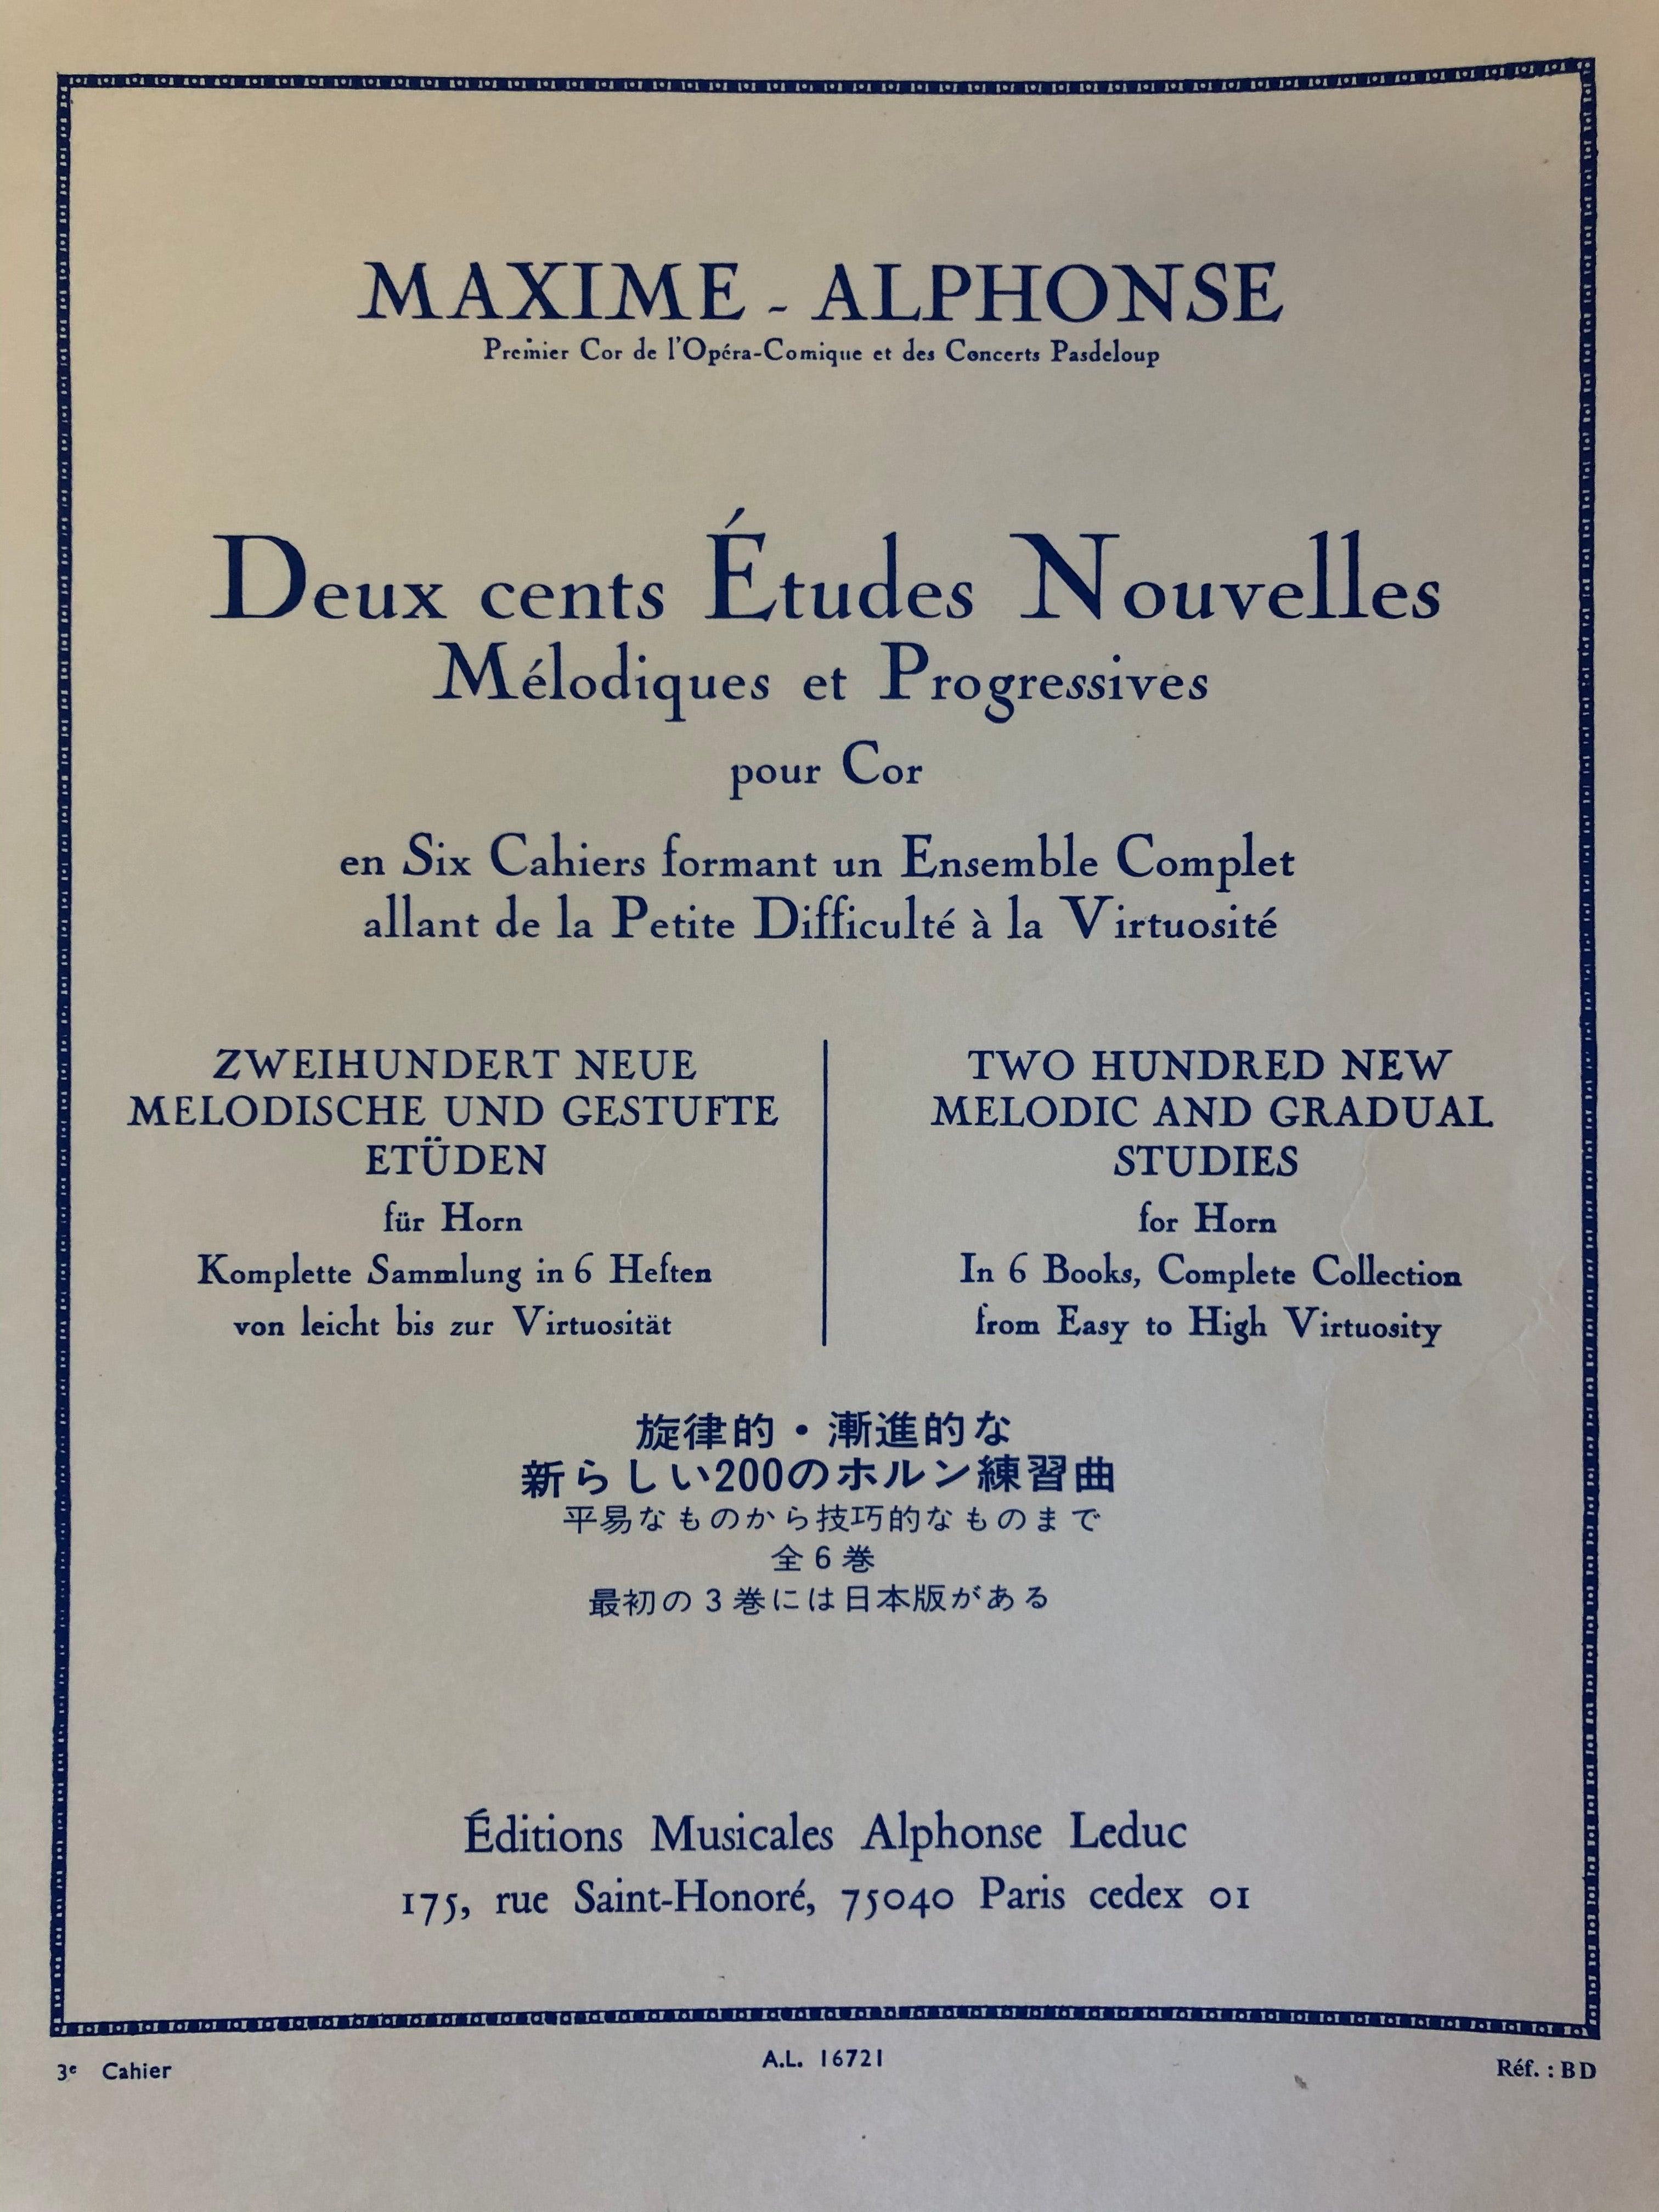 200 Études Nouvelles Mélodiques et Progressives, Maxim Alphonse, deel 3 - Scattando Verkleedhuis